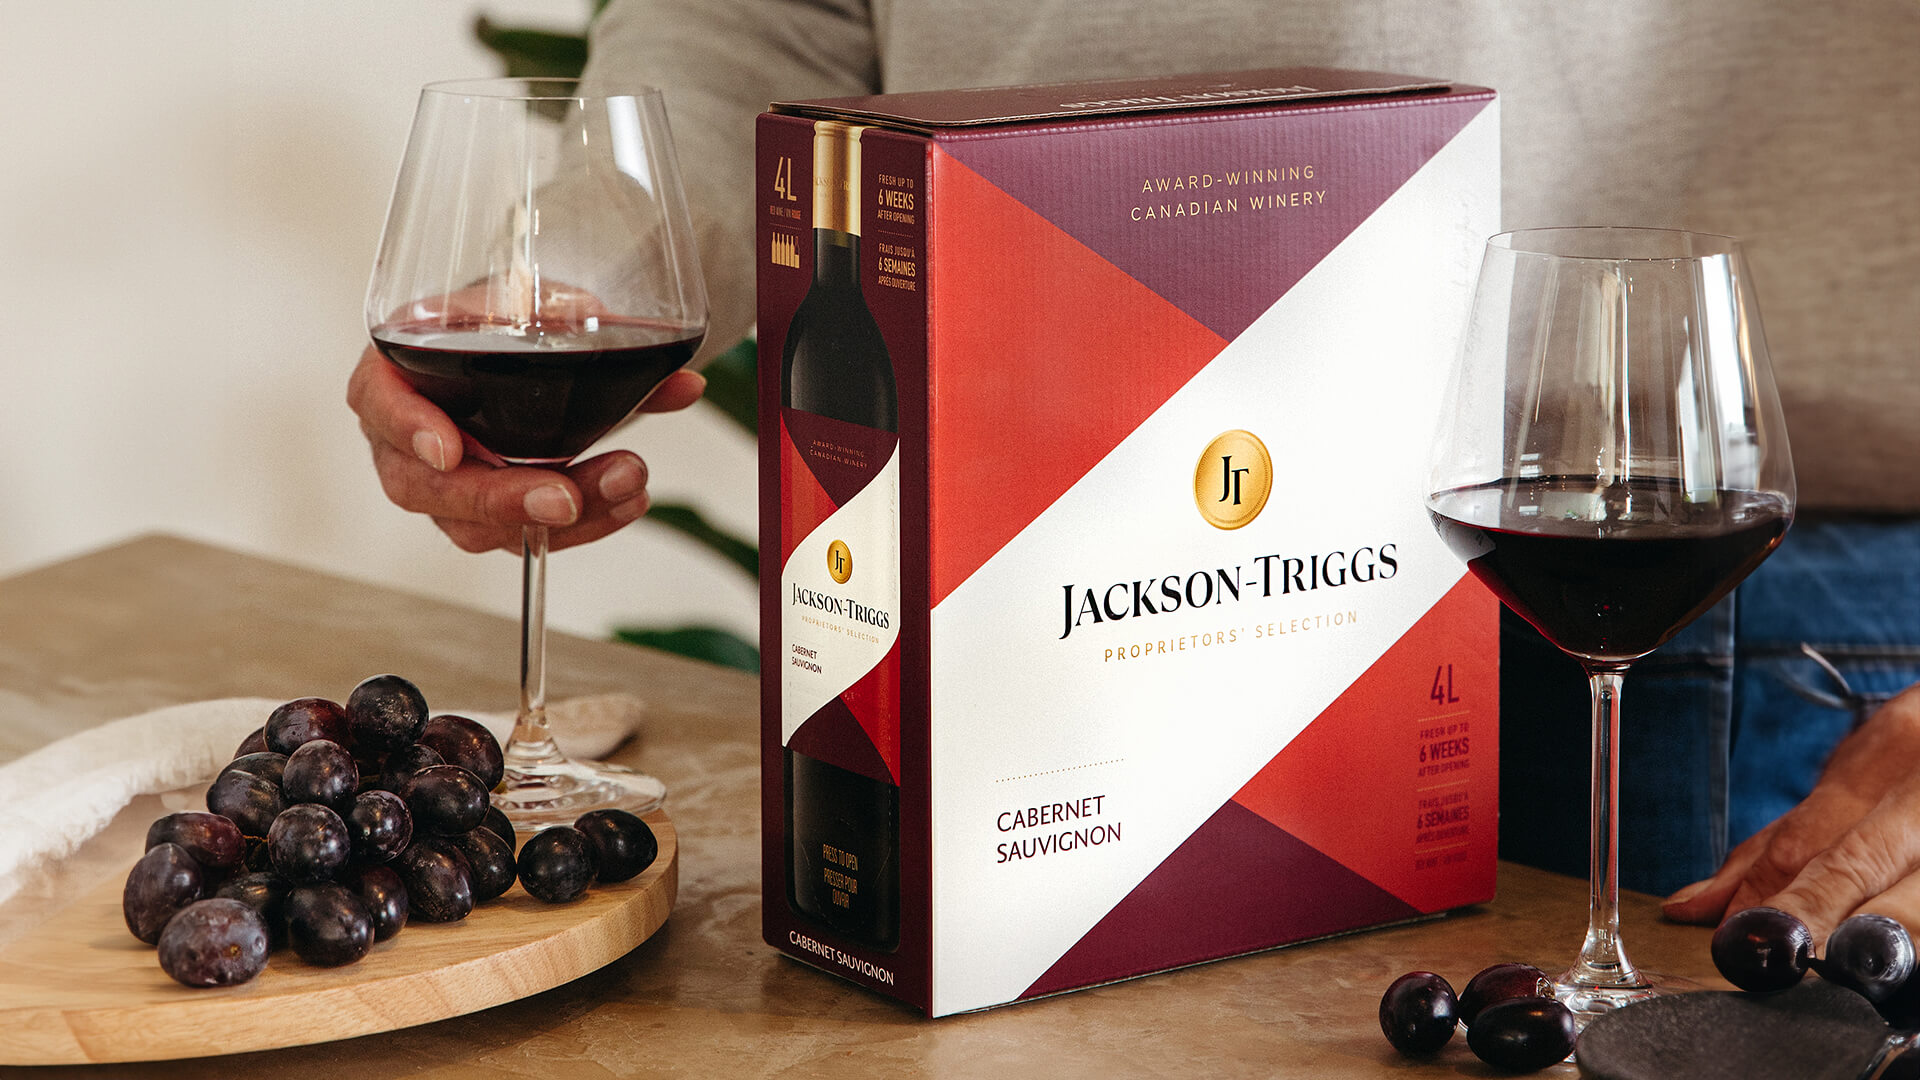 A 4L large format Jackson-Triggs Proprietor's Selection cabernet sauvignon.